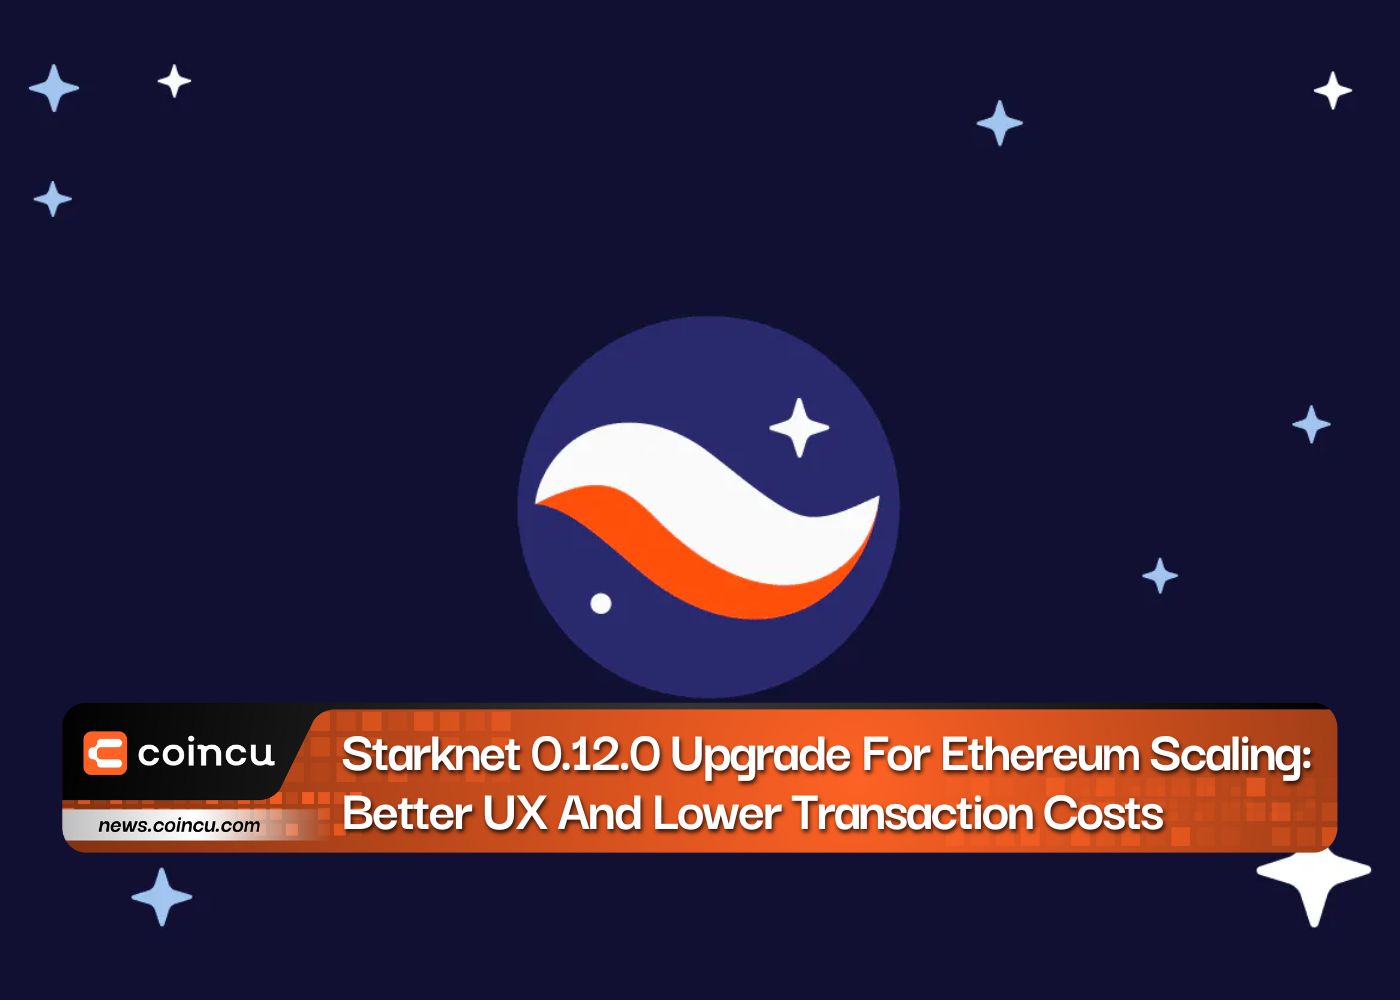 एथेरियम स्केलिंग के लिए स्टार्कनेट 0.12.0 अपग्रेड: बेहतर यूएक्स और कम लेनदेन लागत